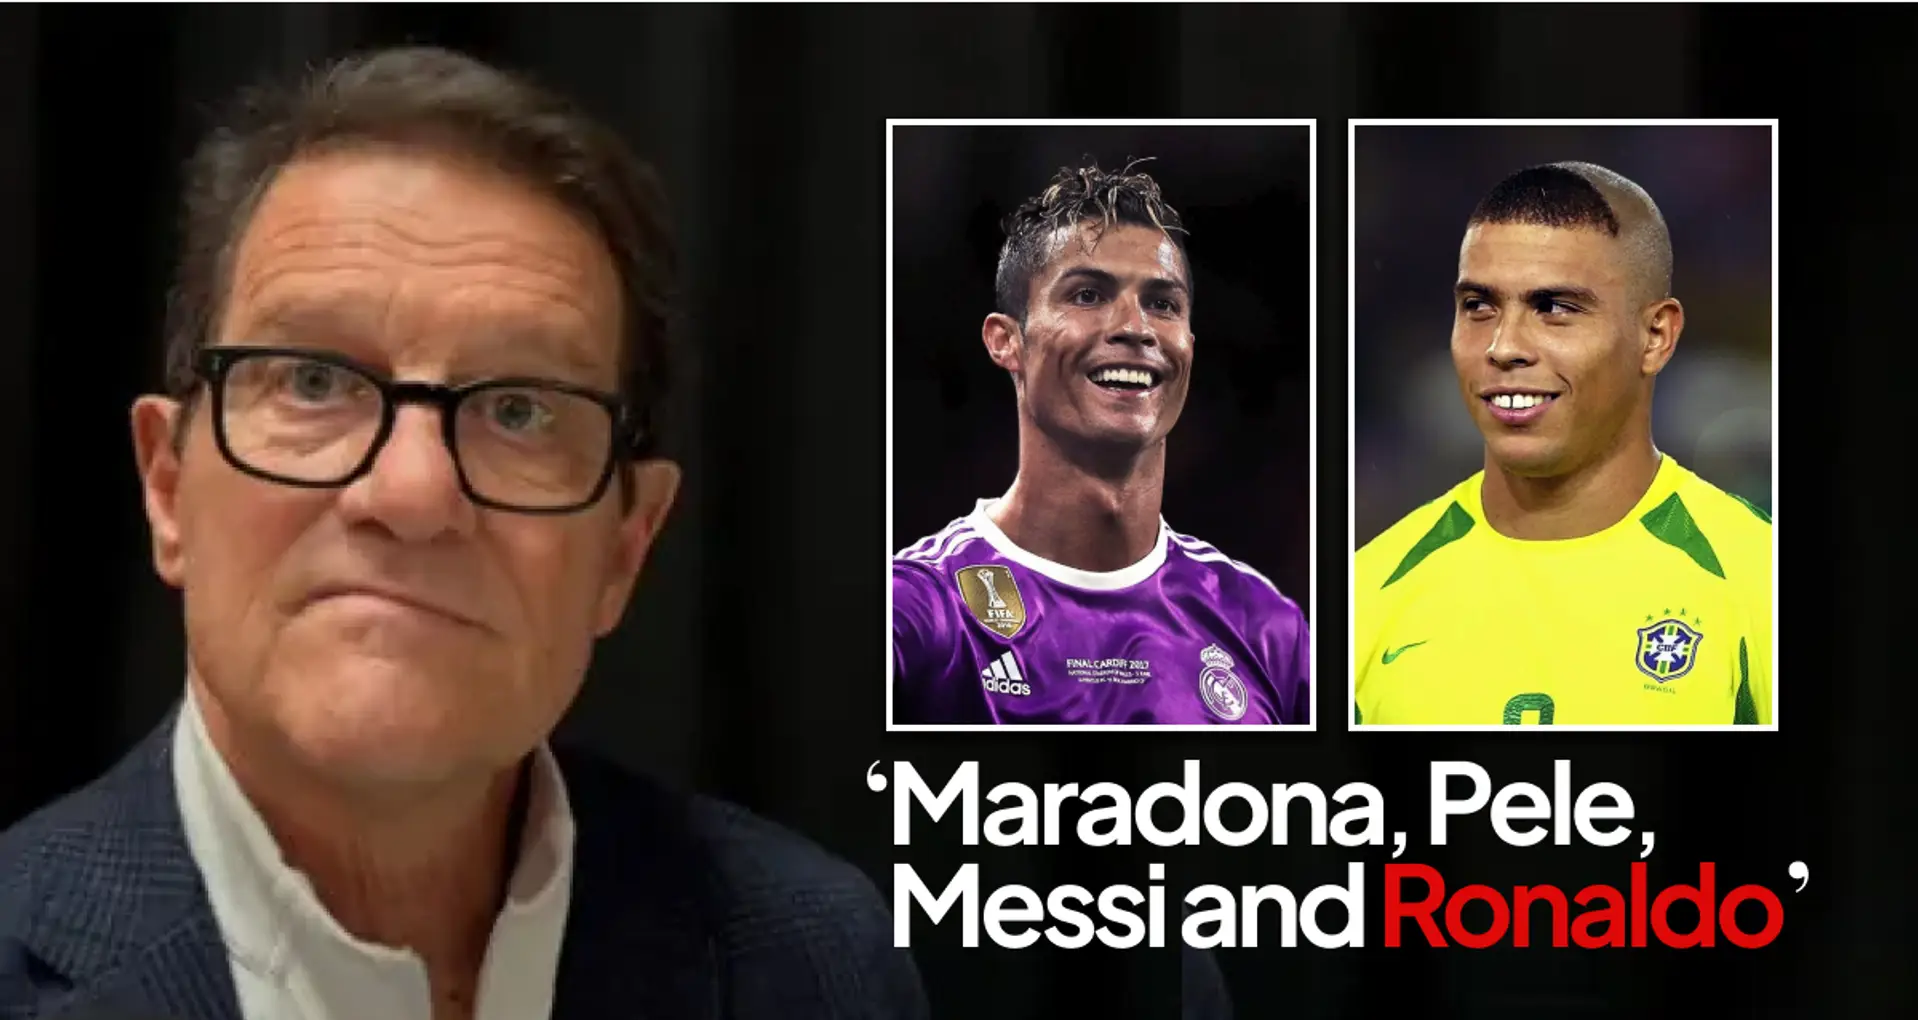 "Il est là-haut avec Messi, Pelé, Maradona": Fabio Capello choisit le meilleur Ronaldo entre Cristiano et Fenômeno